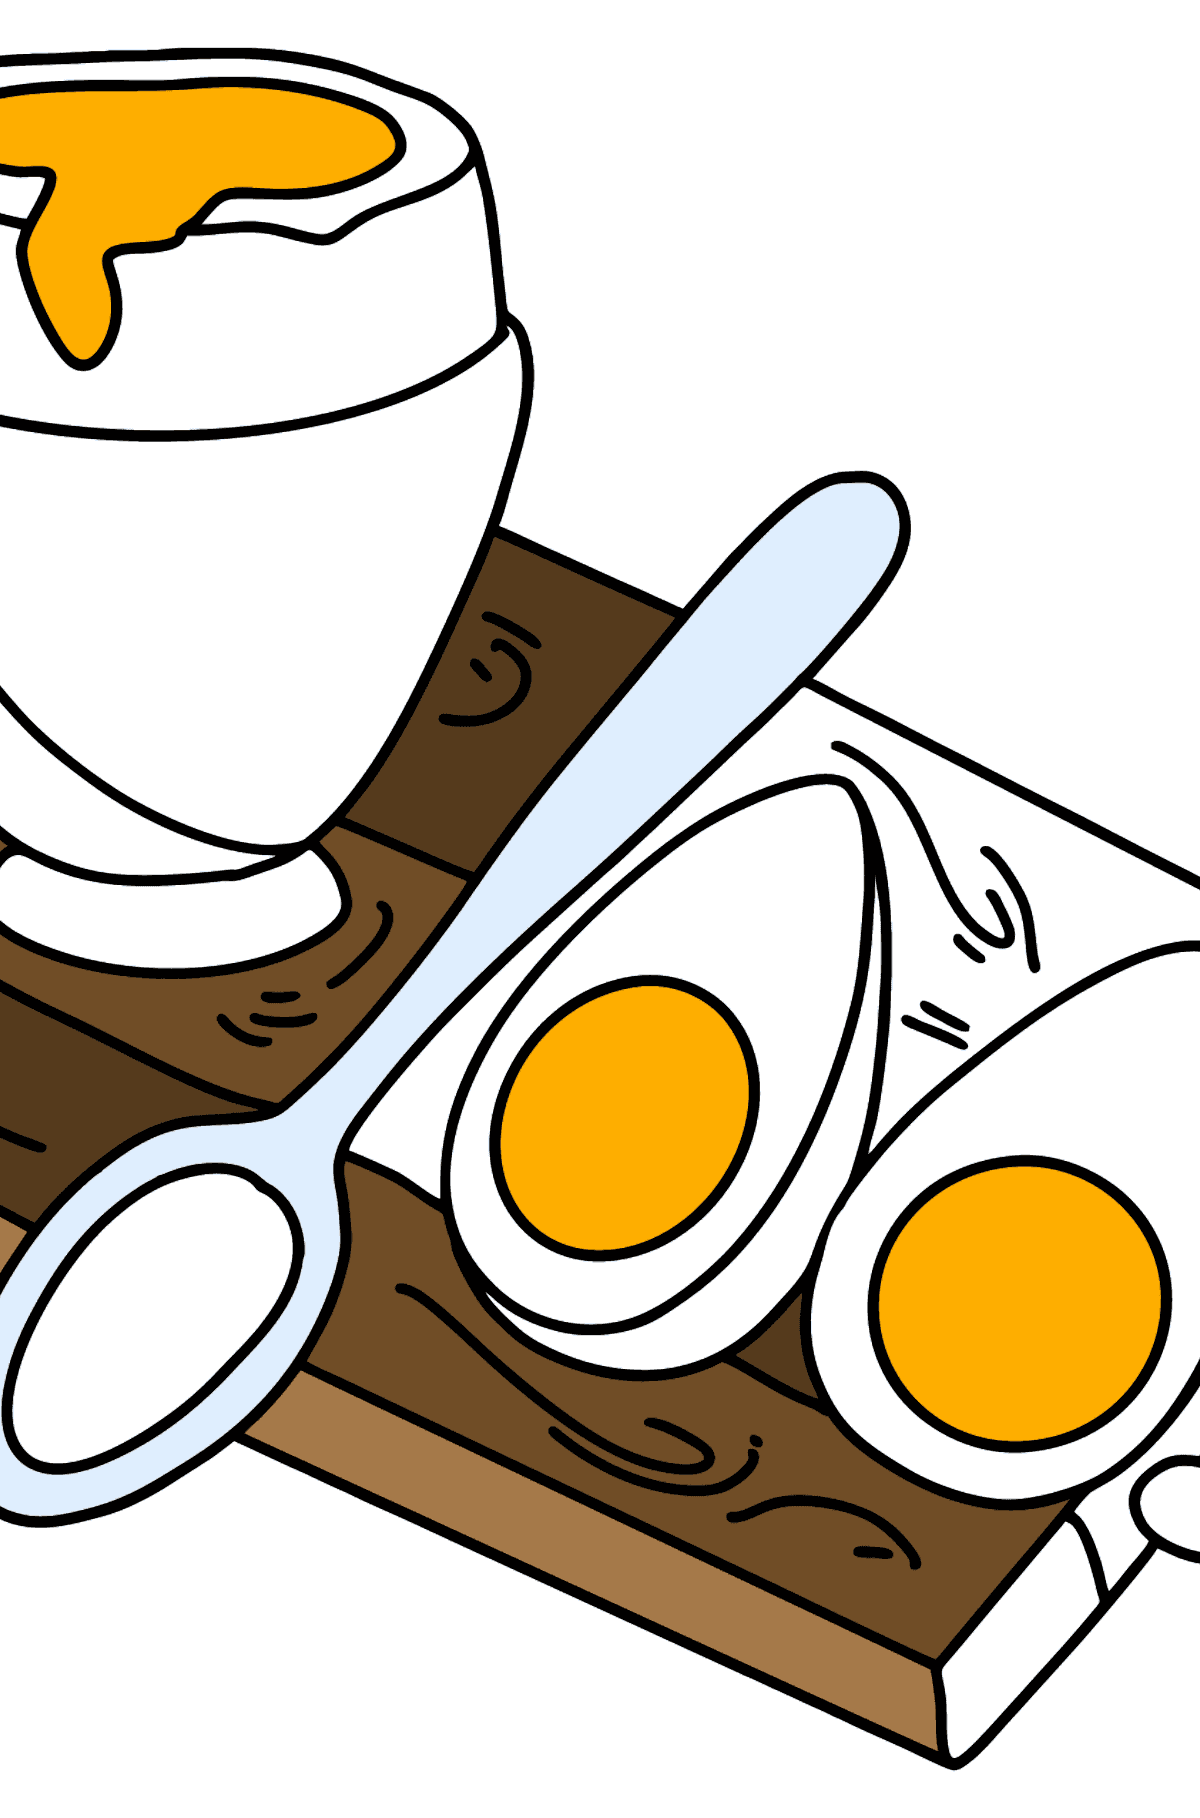 Boyama sayfası sert haşlanmış ve haşlanmış yumurta - Boyamalar çocuklar için